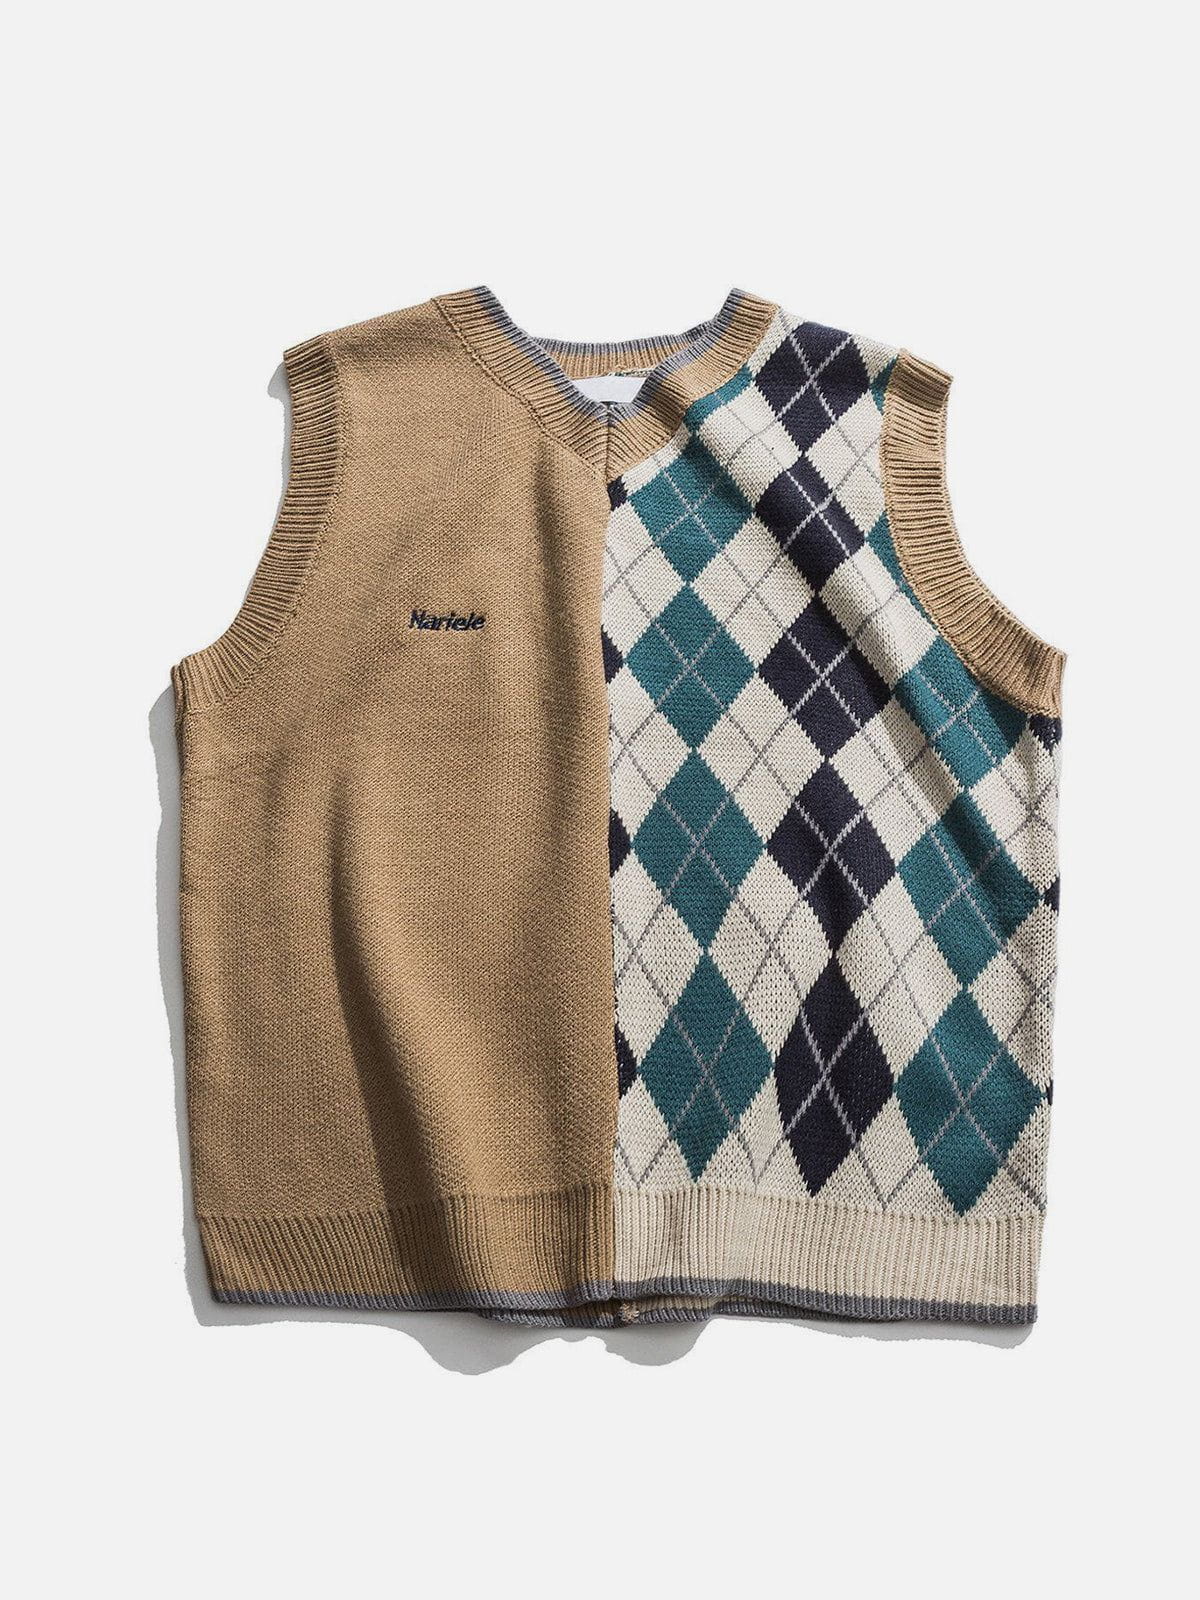 Eprezzy® - Stitching Diamond Pattern Sweater Vest Streetwear Fashion - eprezzy.com